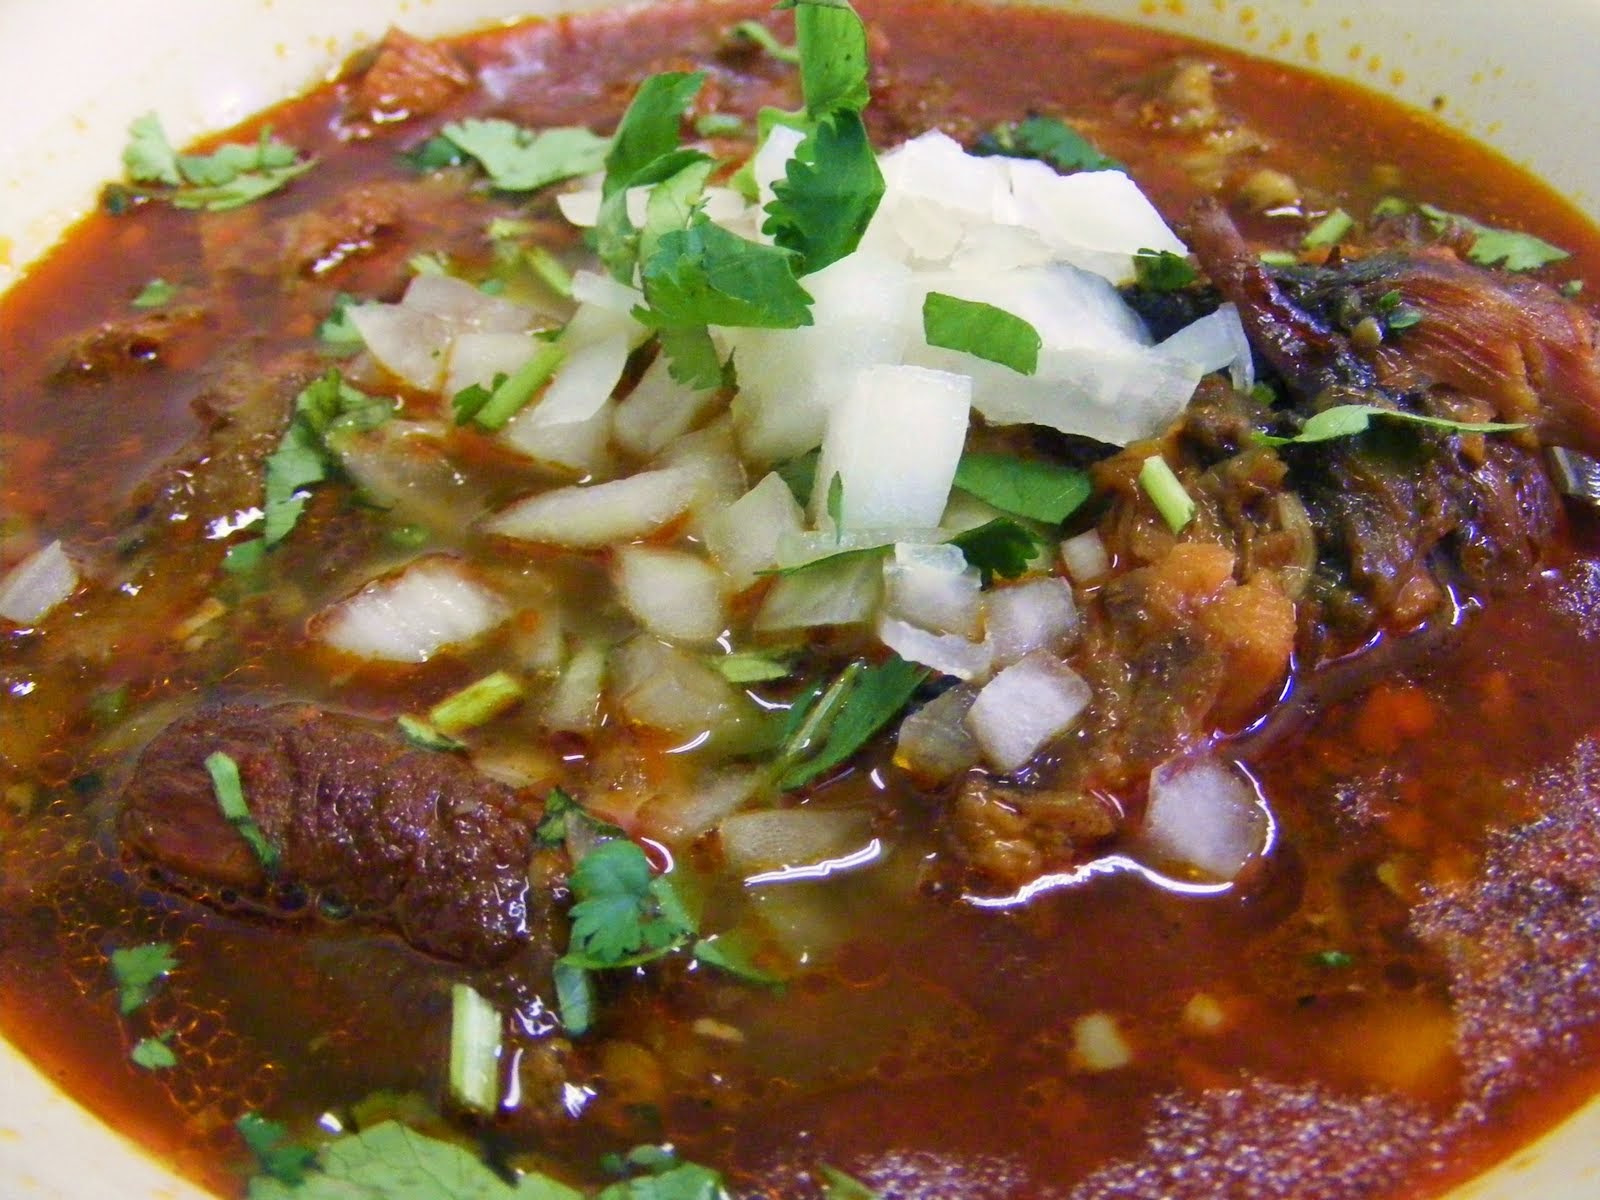 verdaderas recetas de cocina mexicanas: BIRRIA